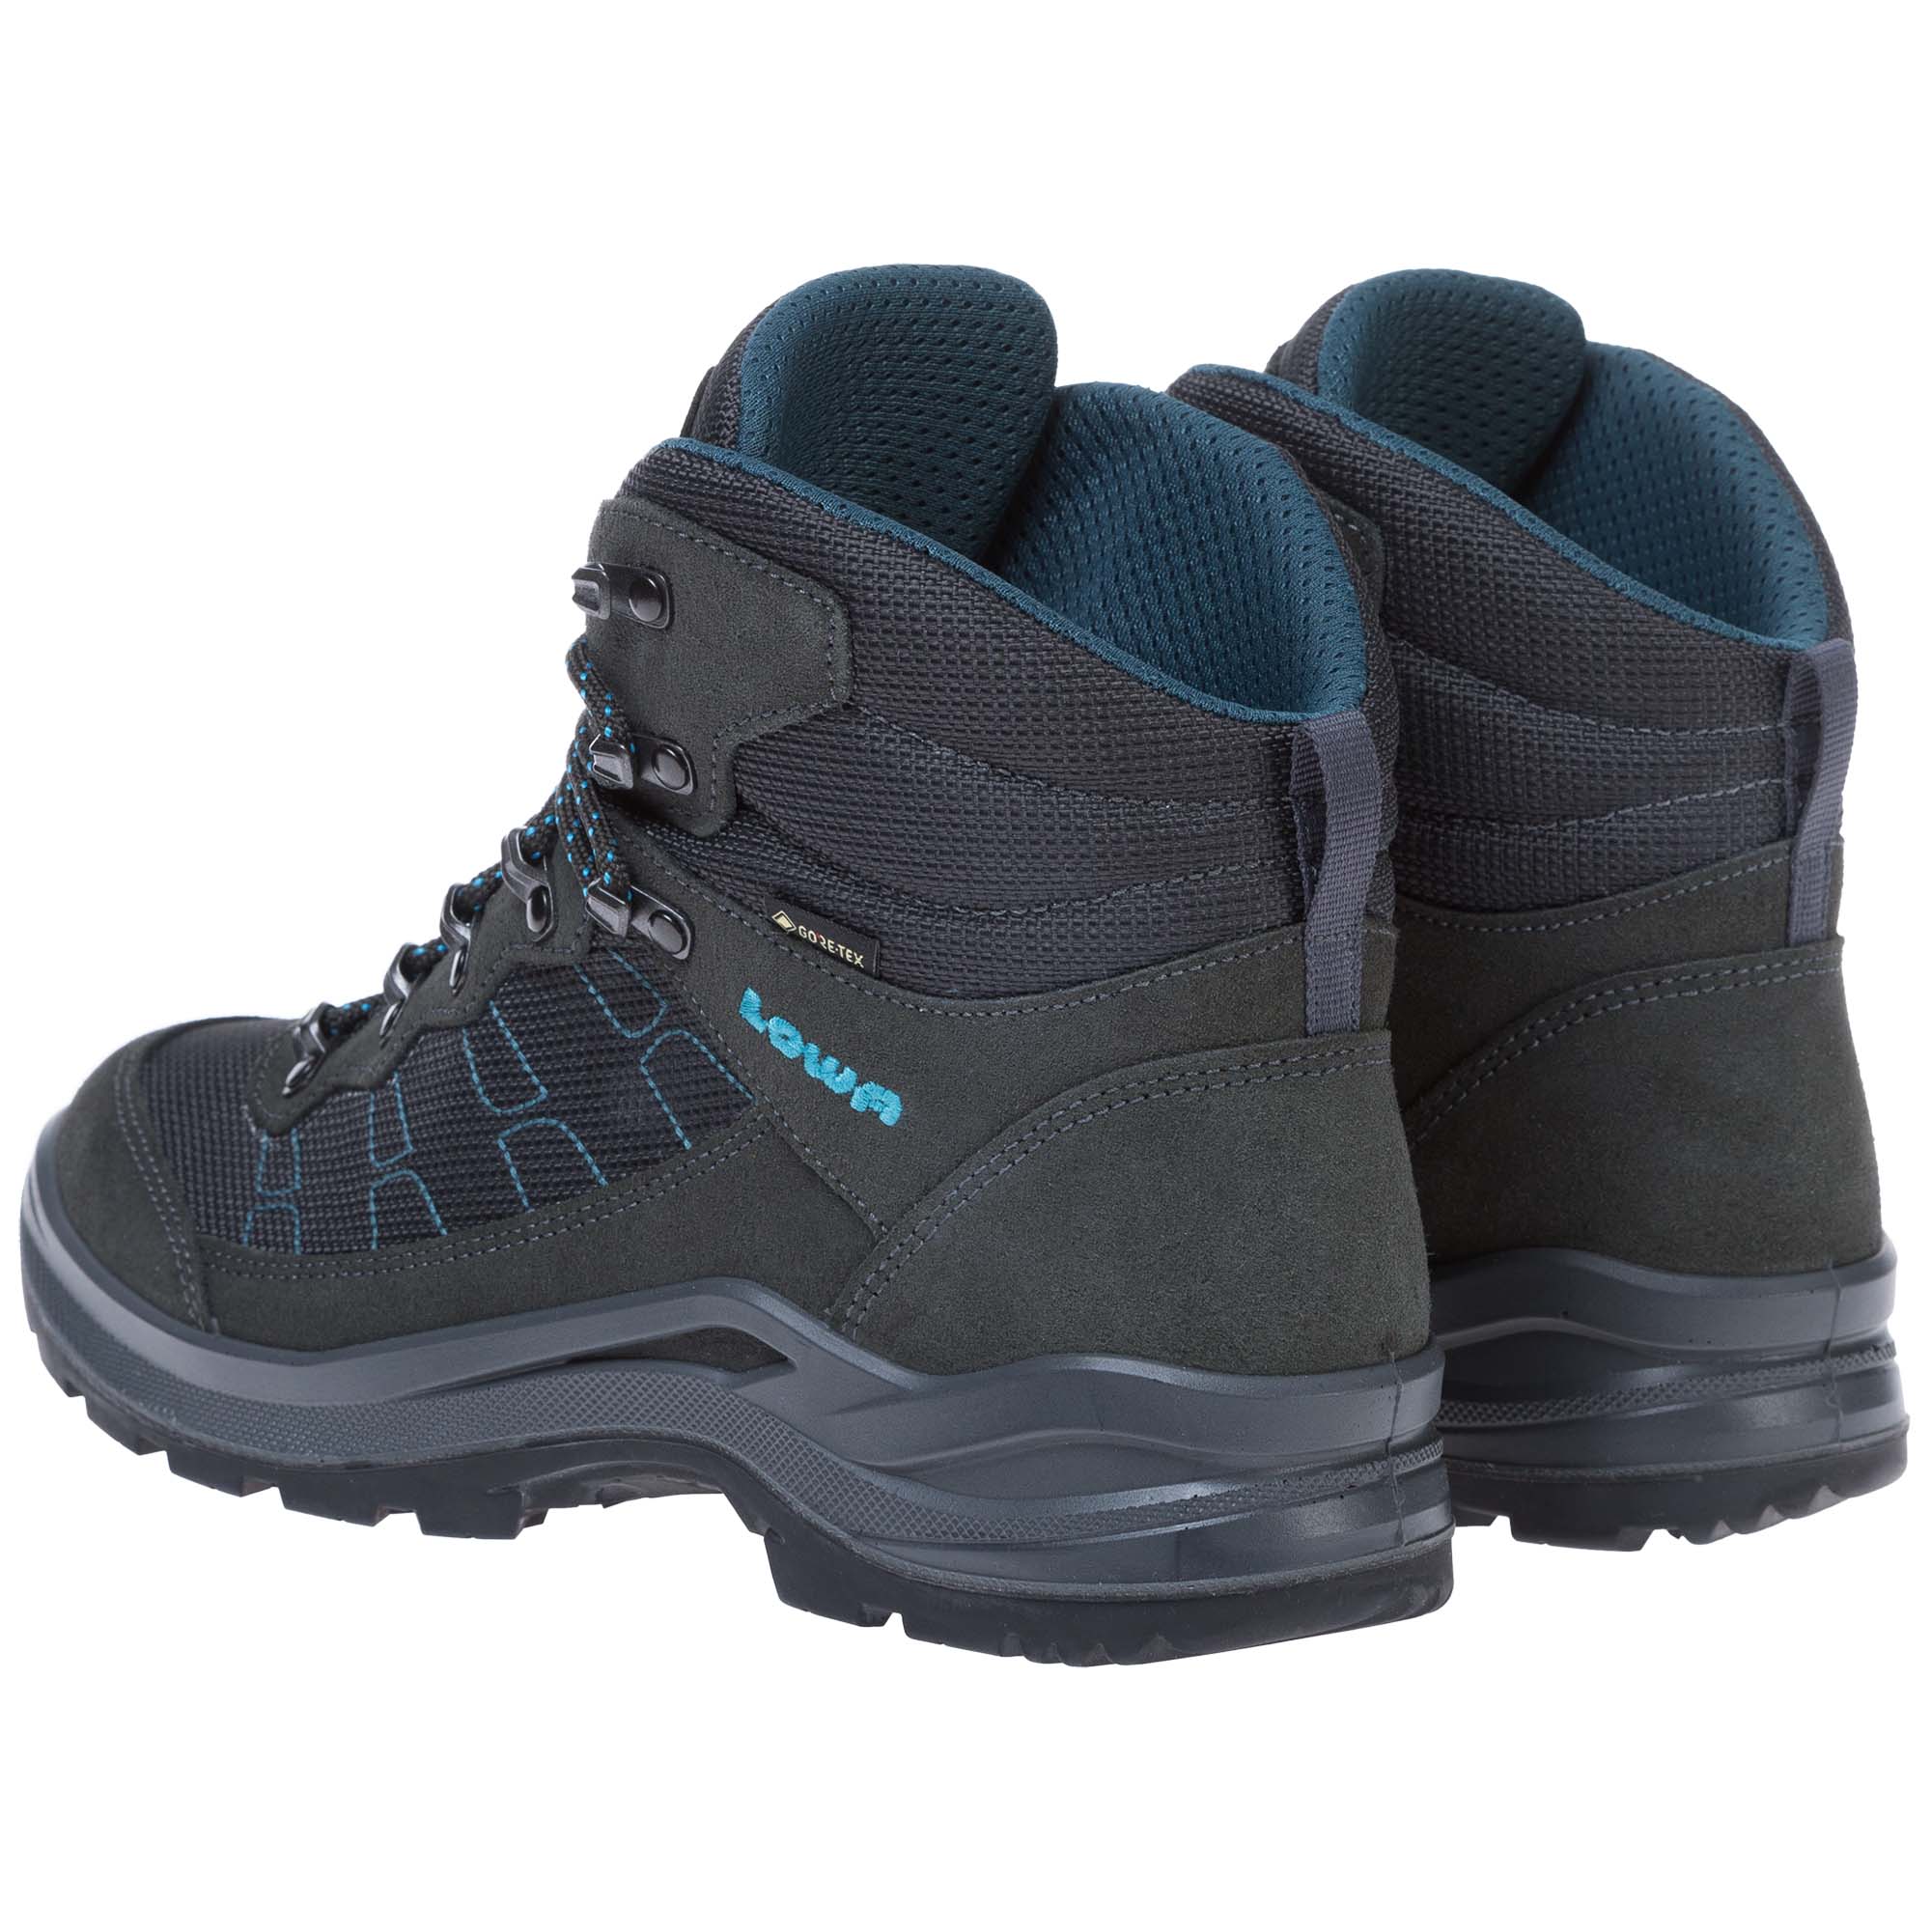 Lowa Taurus Pro GTX Mid Women's Hiking Boots